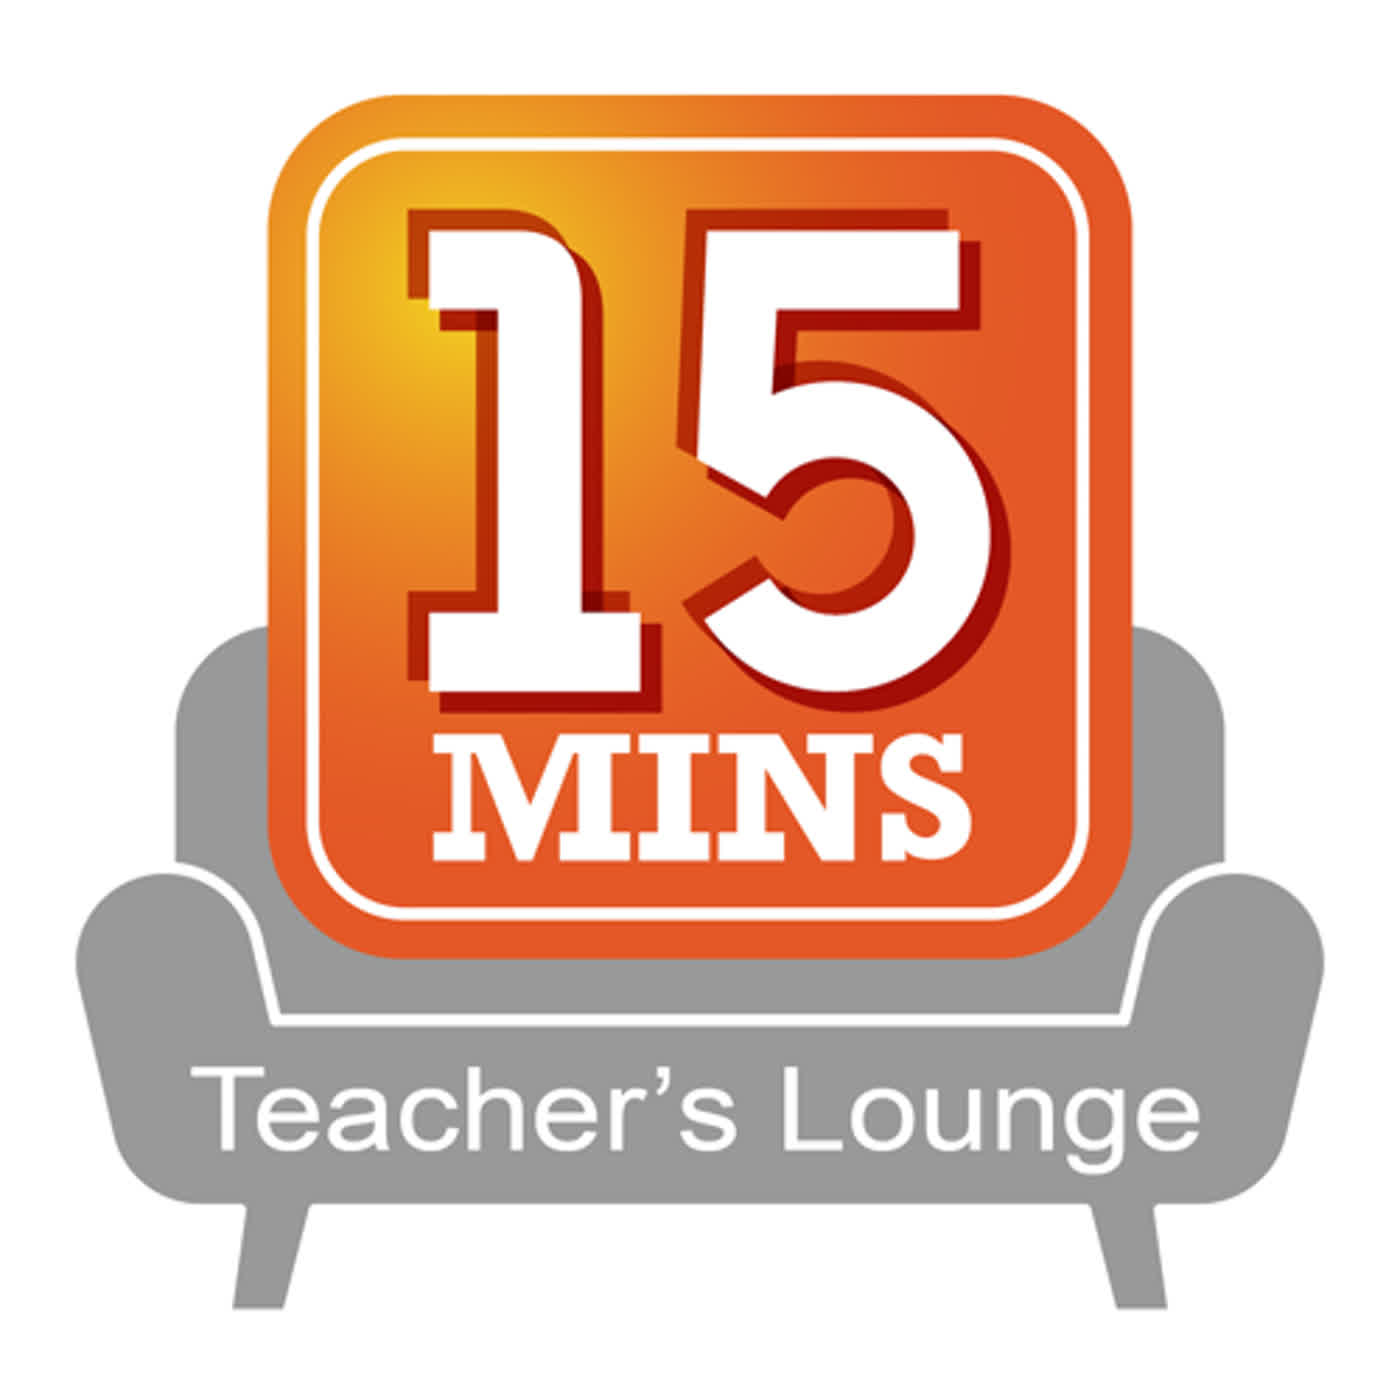 幕後教師室Teacher's Lounge Ep.35: 強化好習慣的原子架構 James Clear's framework for forming better habits